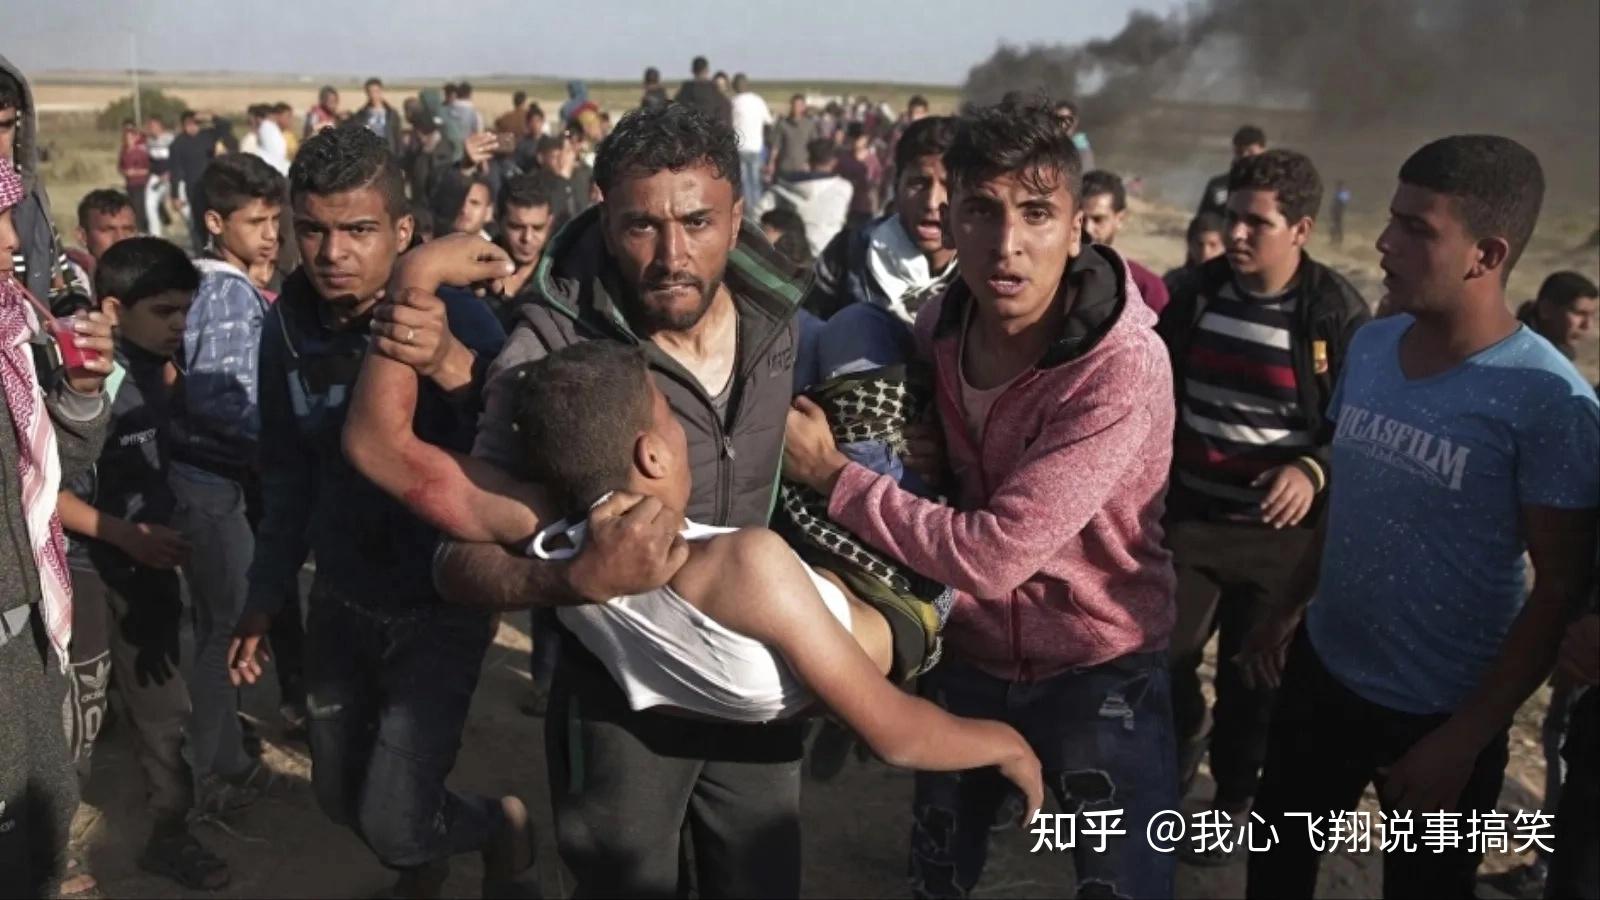 以色列军队呼吁加沙地带北部居民撤离/文章 - Mandarinian